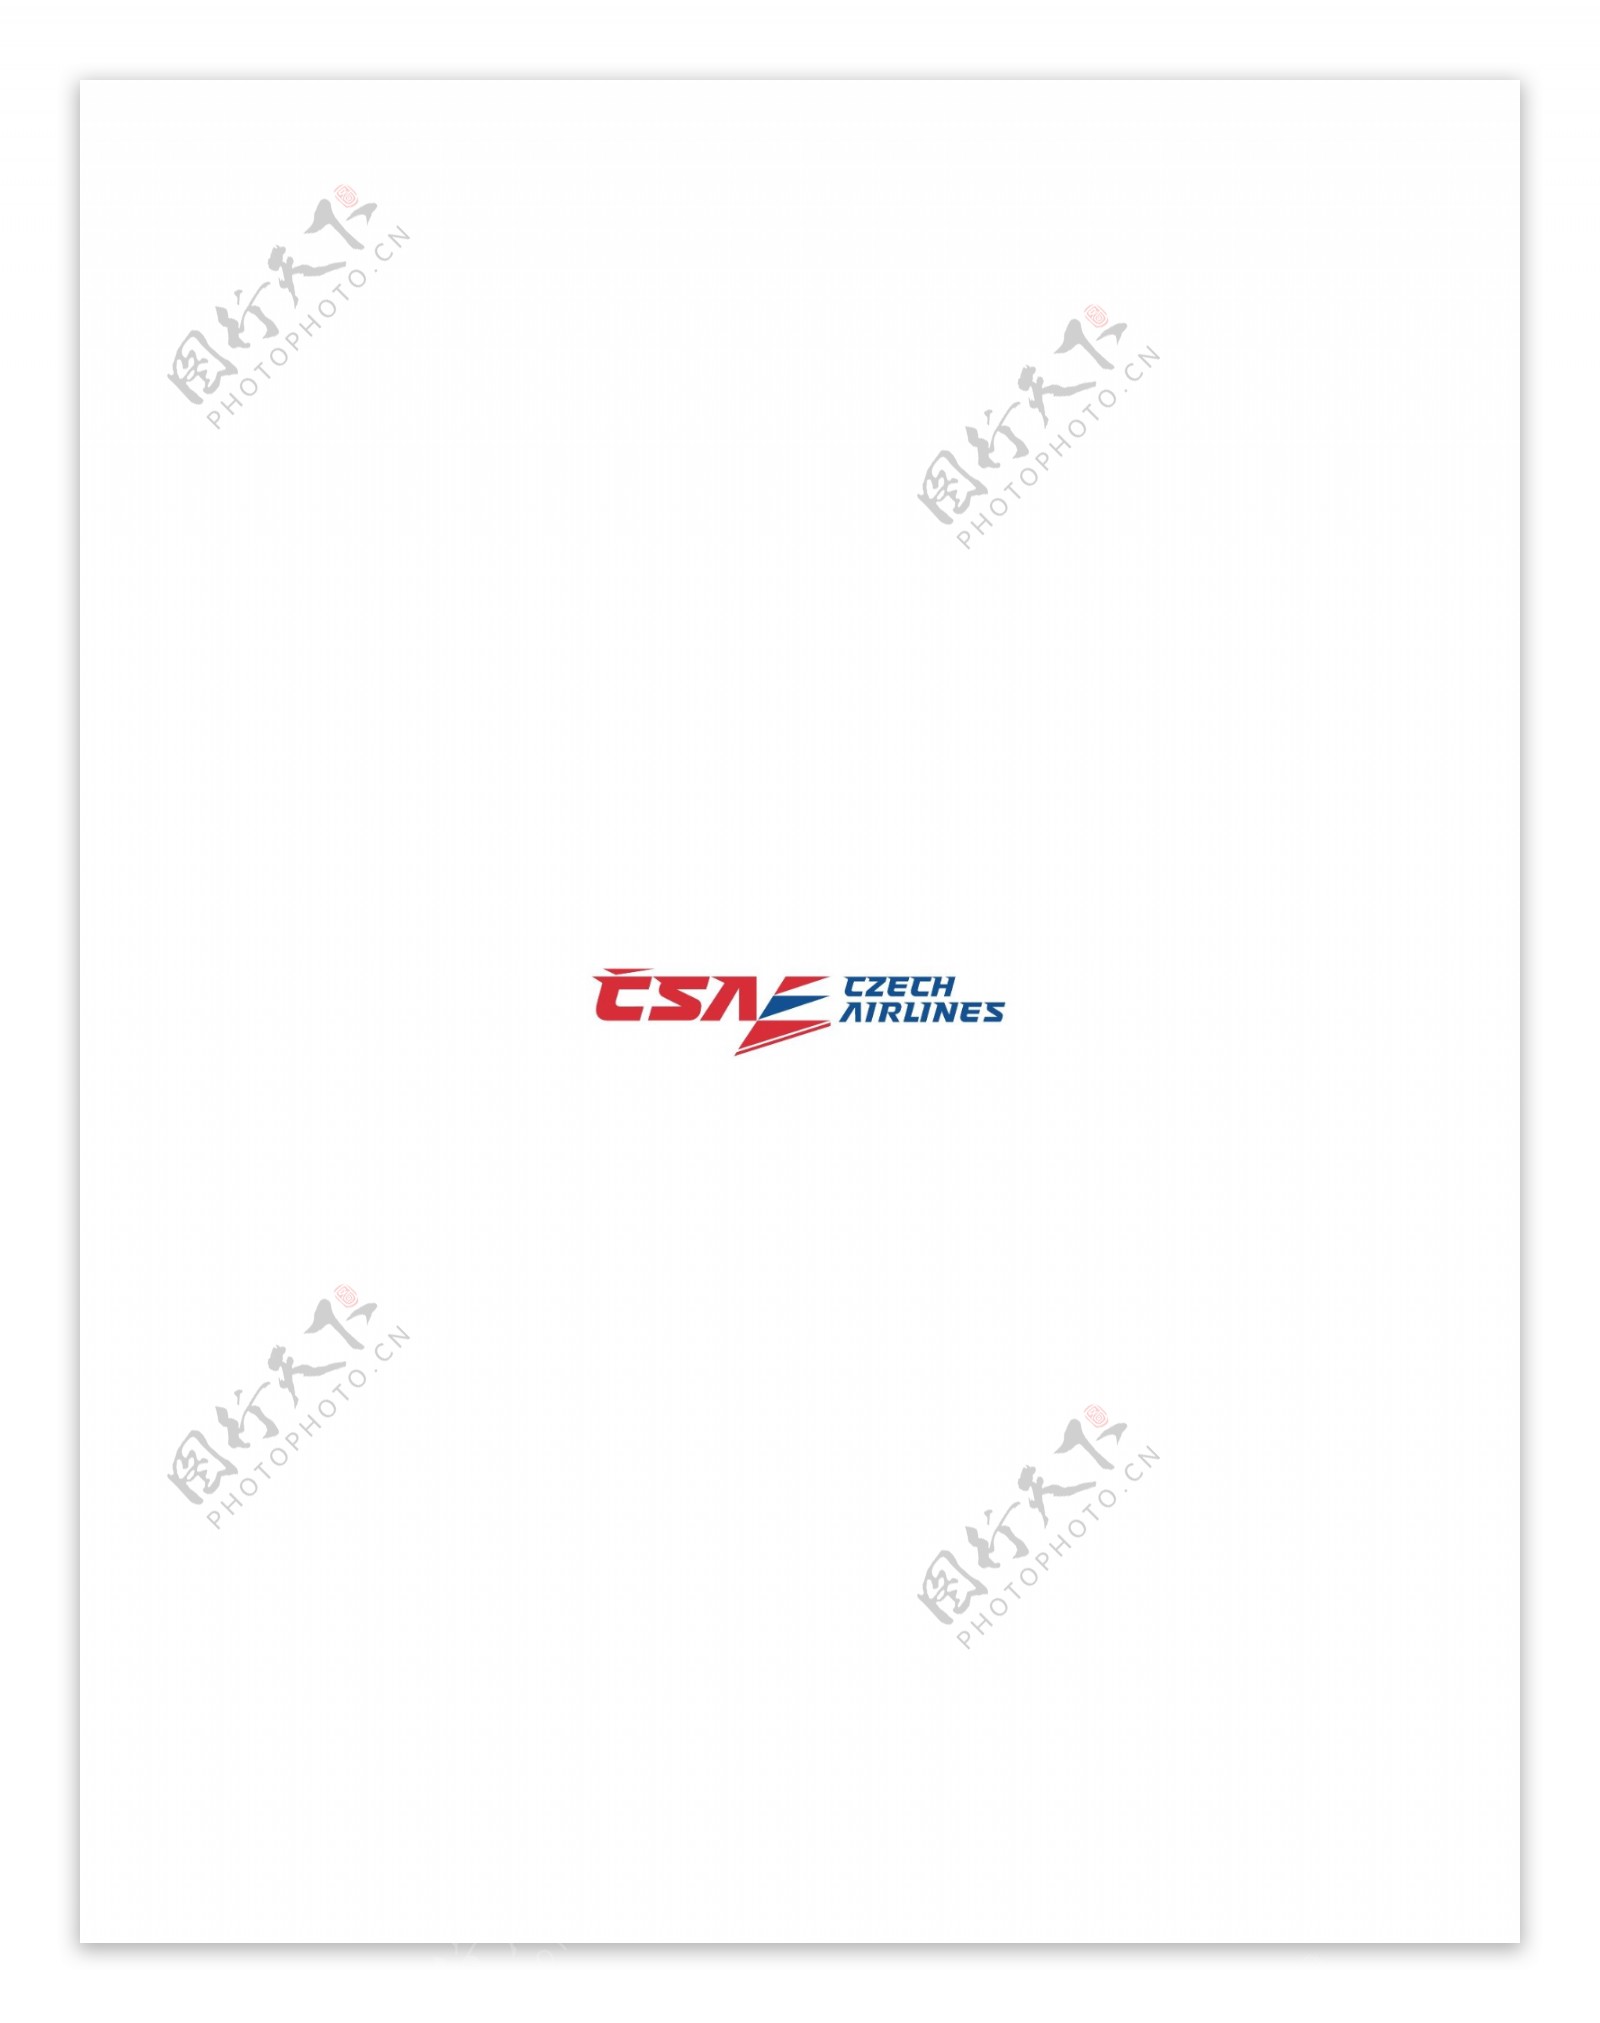 CSA2logo设计欣赏CSA2航空业标志下载标志设计欣赏